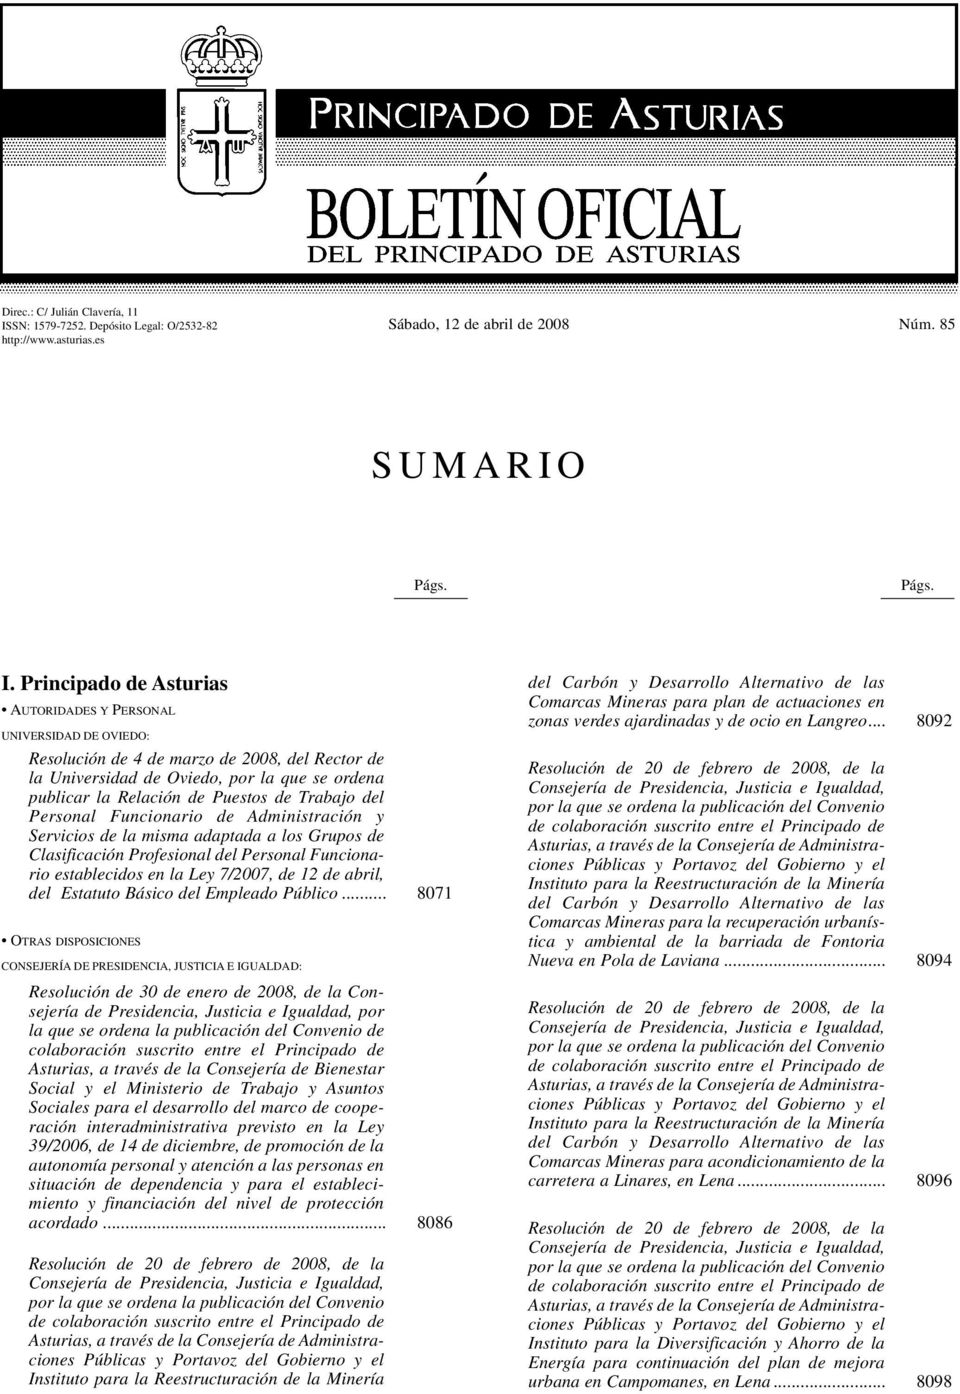 Principado de Asturias AUTORIDADES Y PERSONAL UNIVERSIDAD DE OVIEDO: Resolución de 4 de marzo de 2008, del Rector de la Universidad de Oviedo, por la que se ordena publicar la Relación de Puestos de